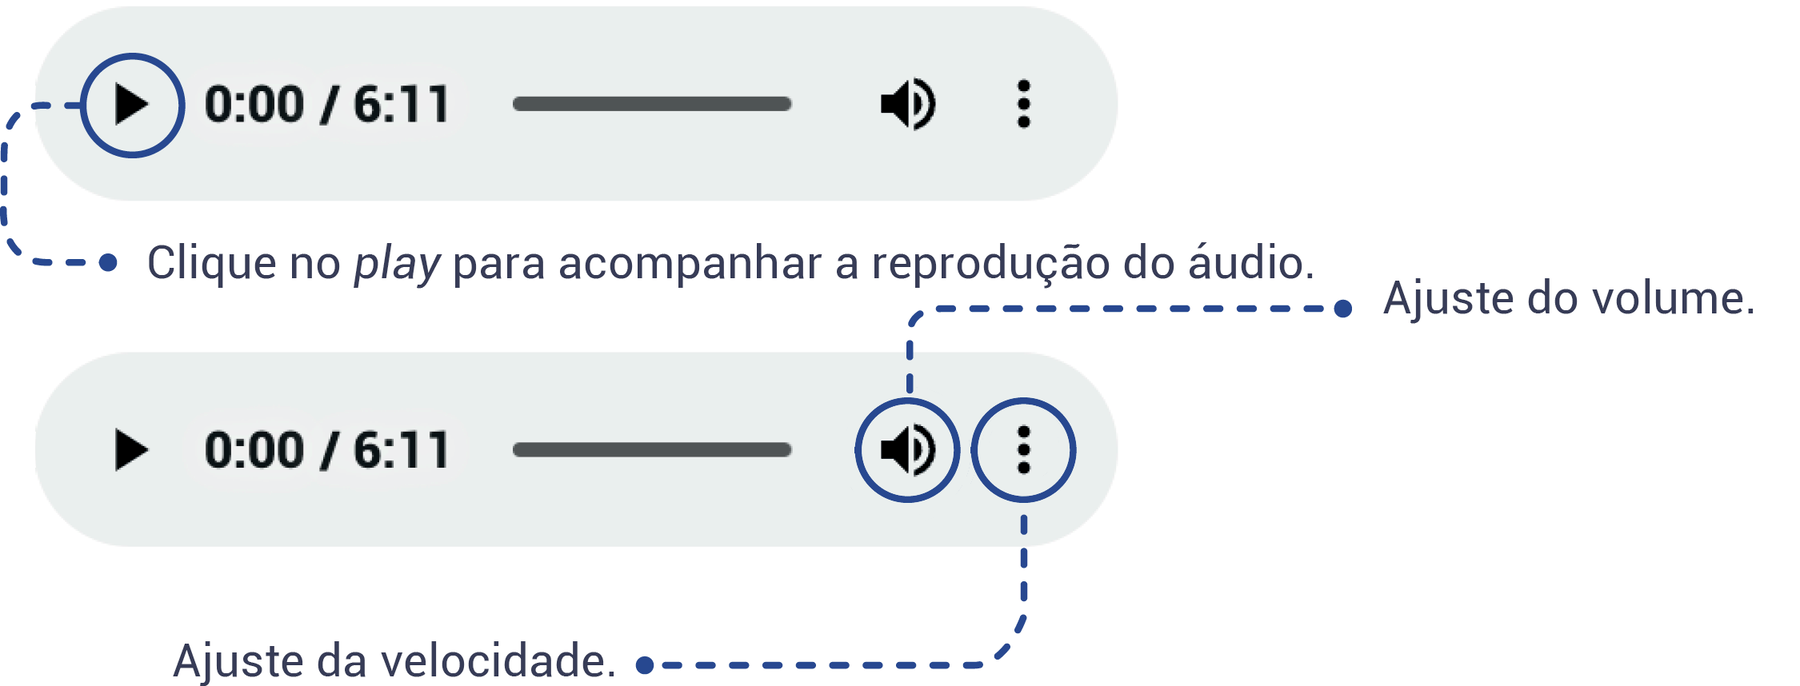 Esquema mostrando como deve ser feita a navegação do objeto digital ÁUDIO, indicando que o ícone play deve ser clicado para acompanhar a reprodução do áudio, o ícone de som deve ser usado para o ajuste de volume e o ícone com três pontos alinhados verticalmente serve para o ajuste da velocidade do áudio.